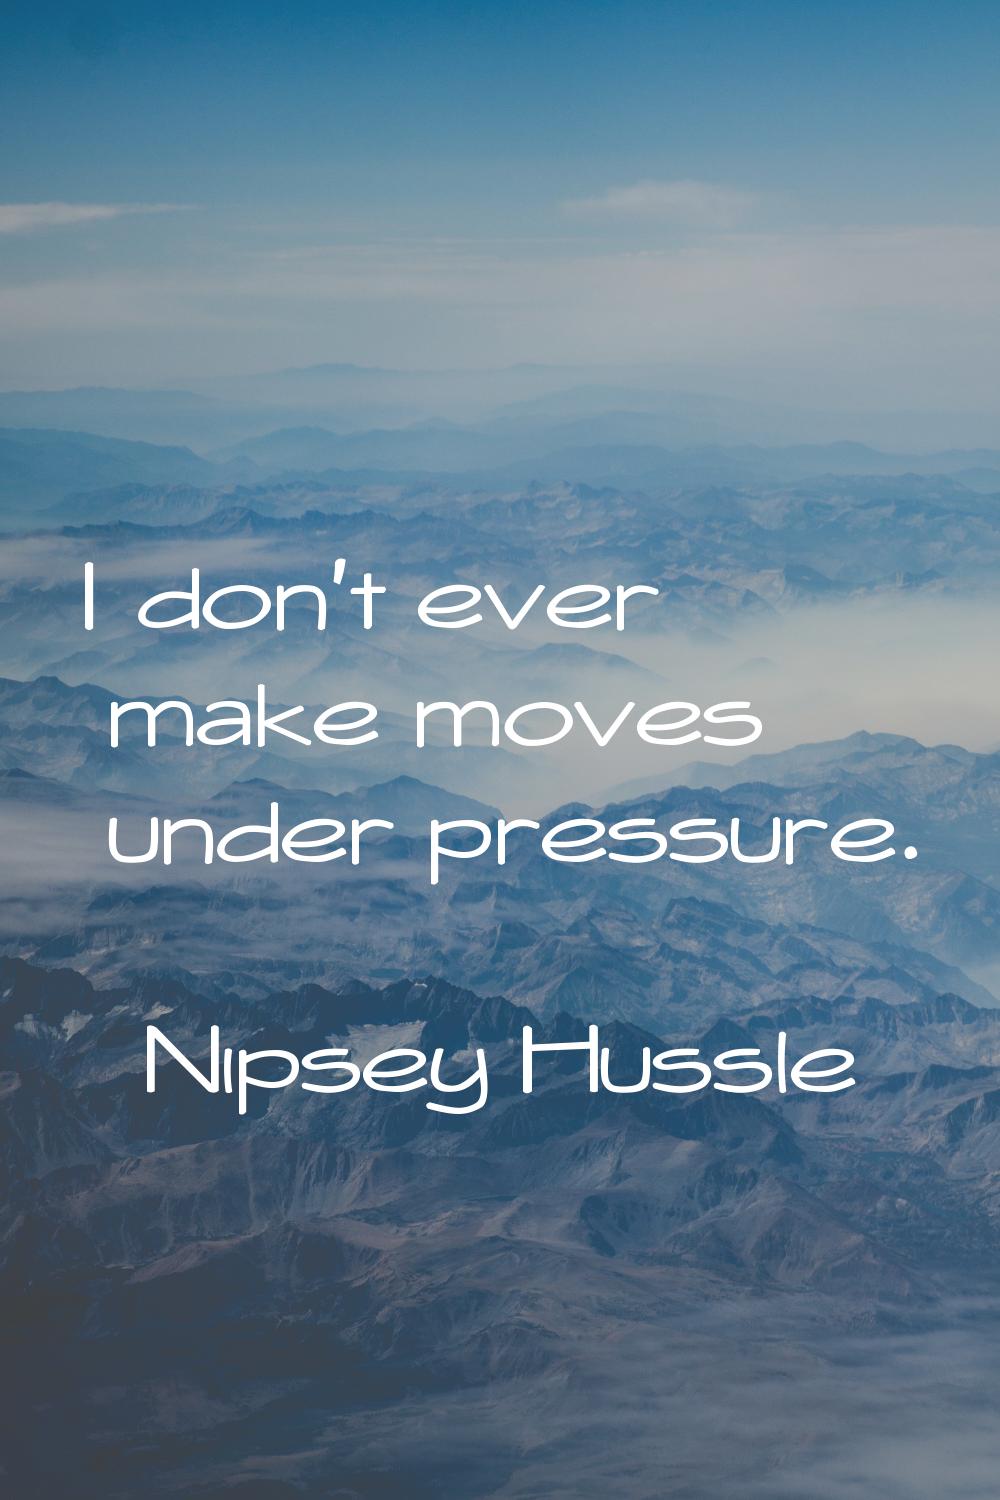 I don't ever make moves under pressure.